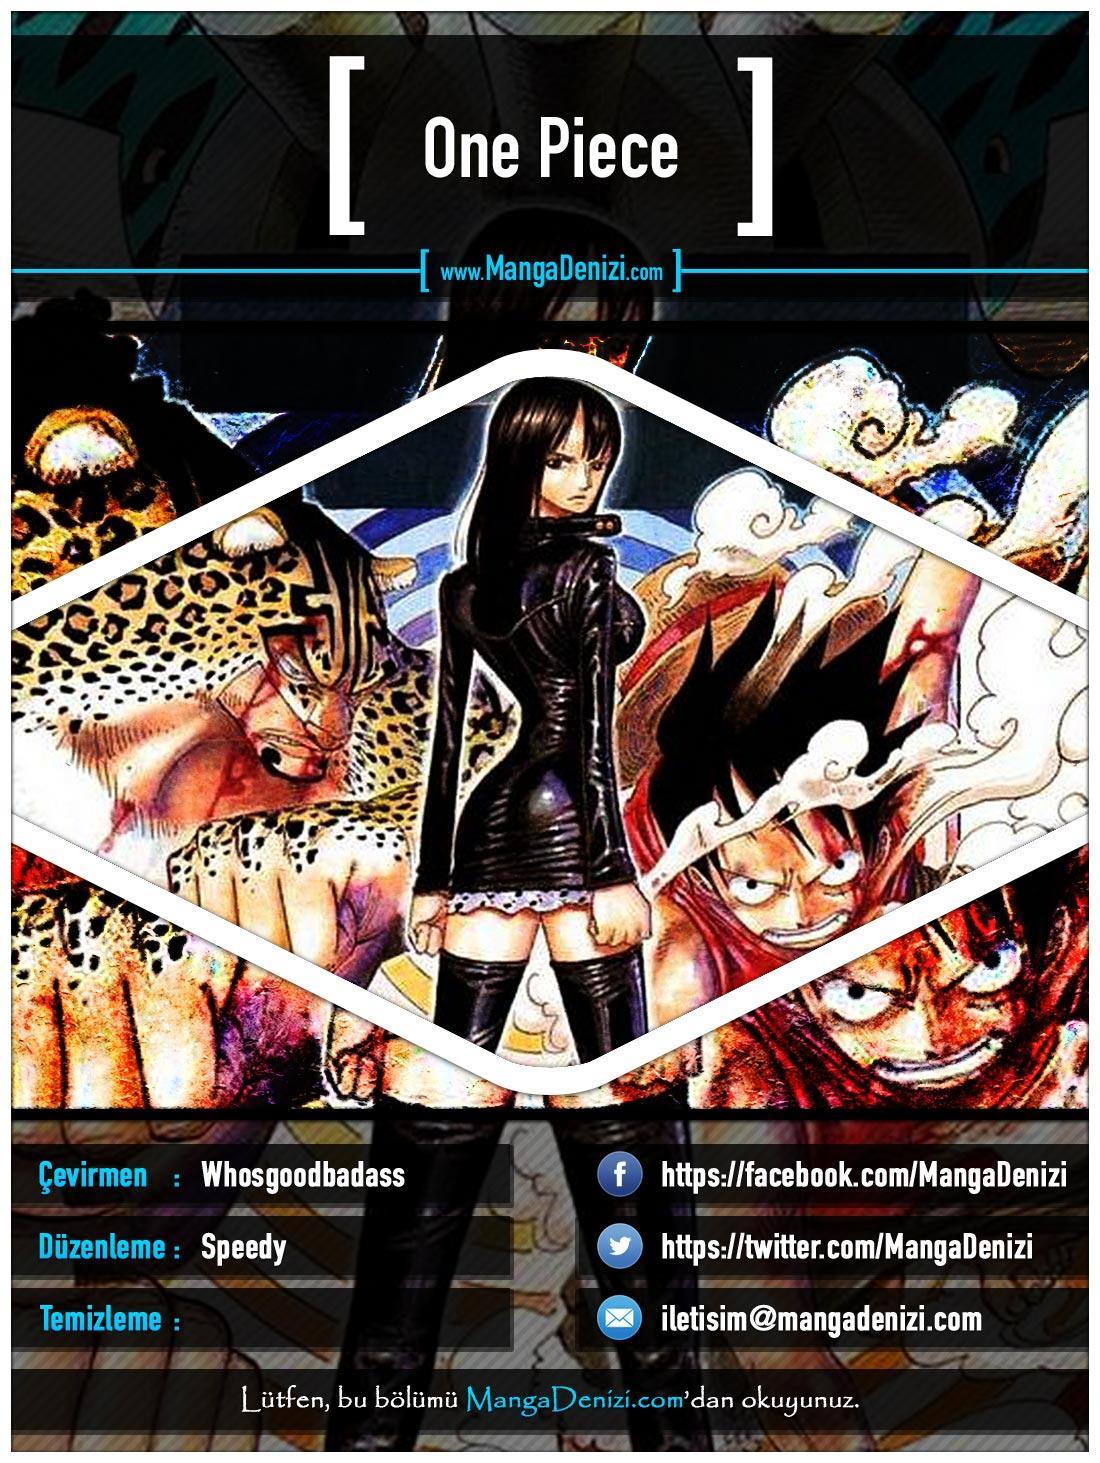 One Piece [Renkli] mangasının 0339 bölümünün 1. sayfasını okuyorsunuz.